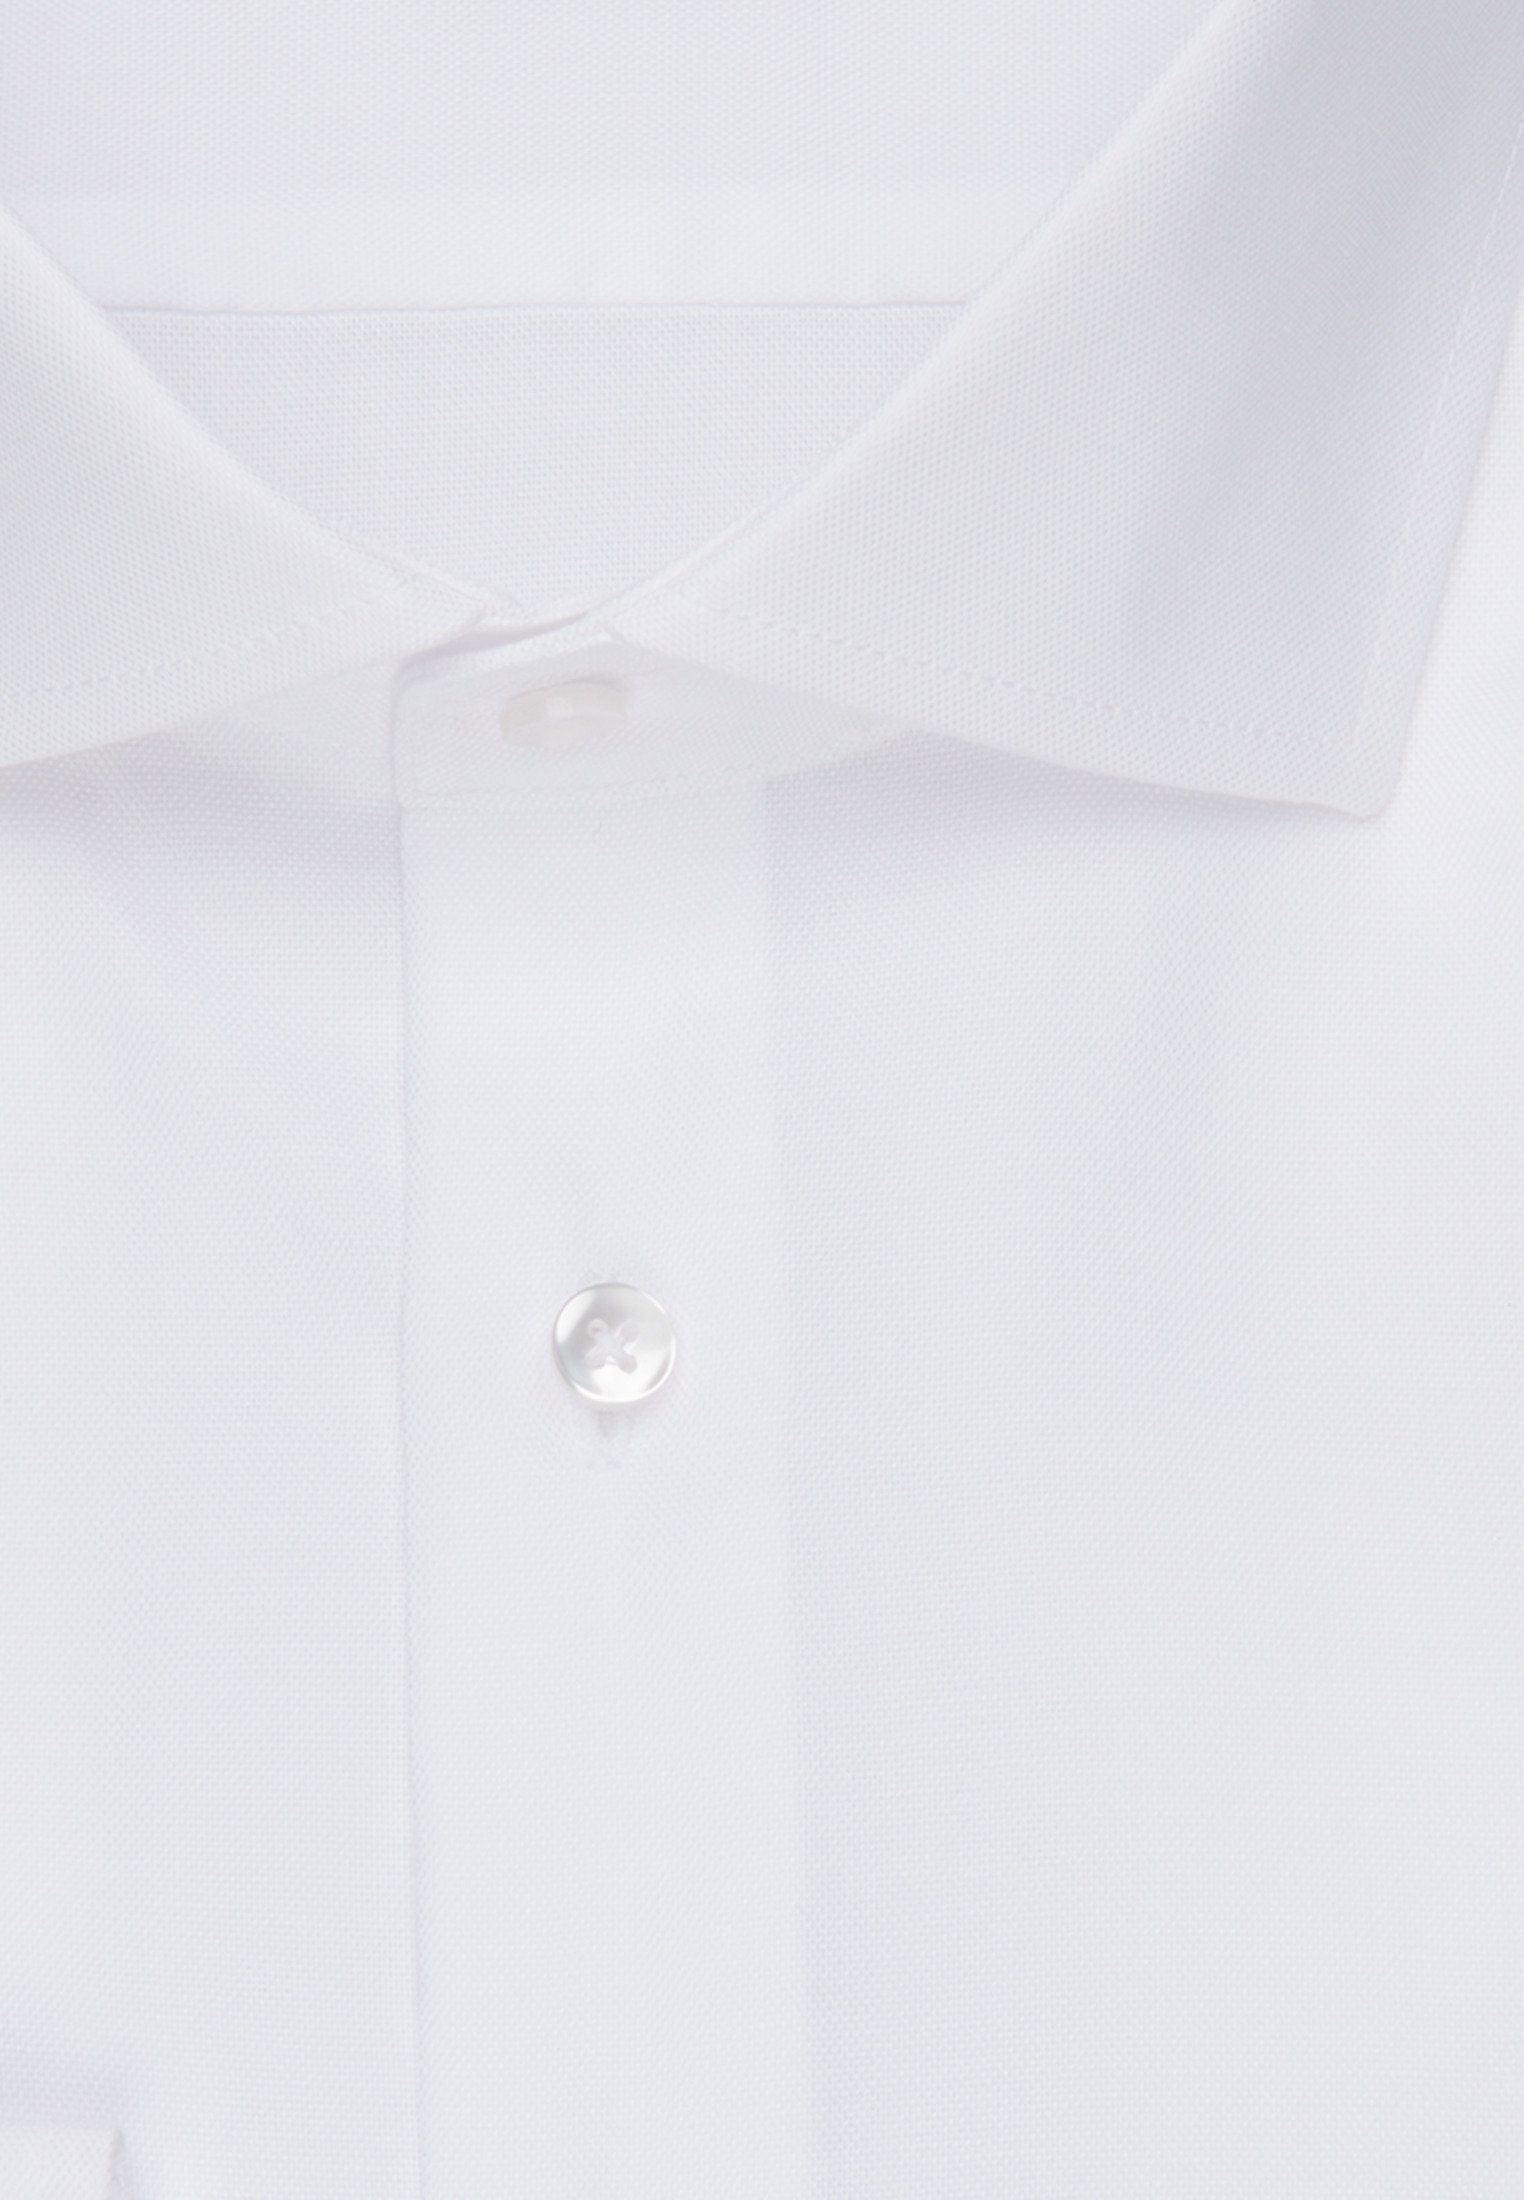 Herren Hemden seidensticker Businesshemd Shaped Shaped Langarm Kentkragen Uni